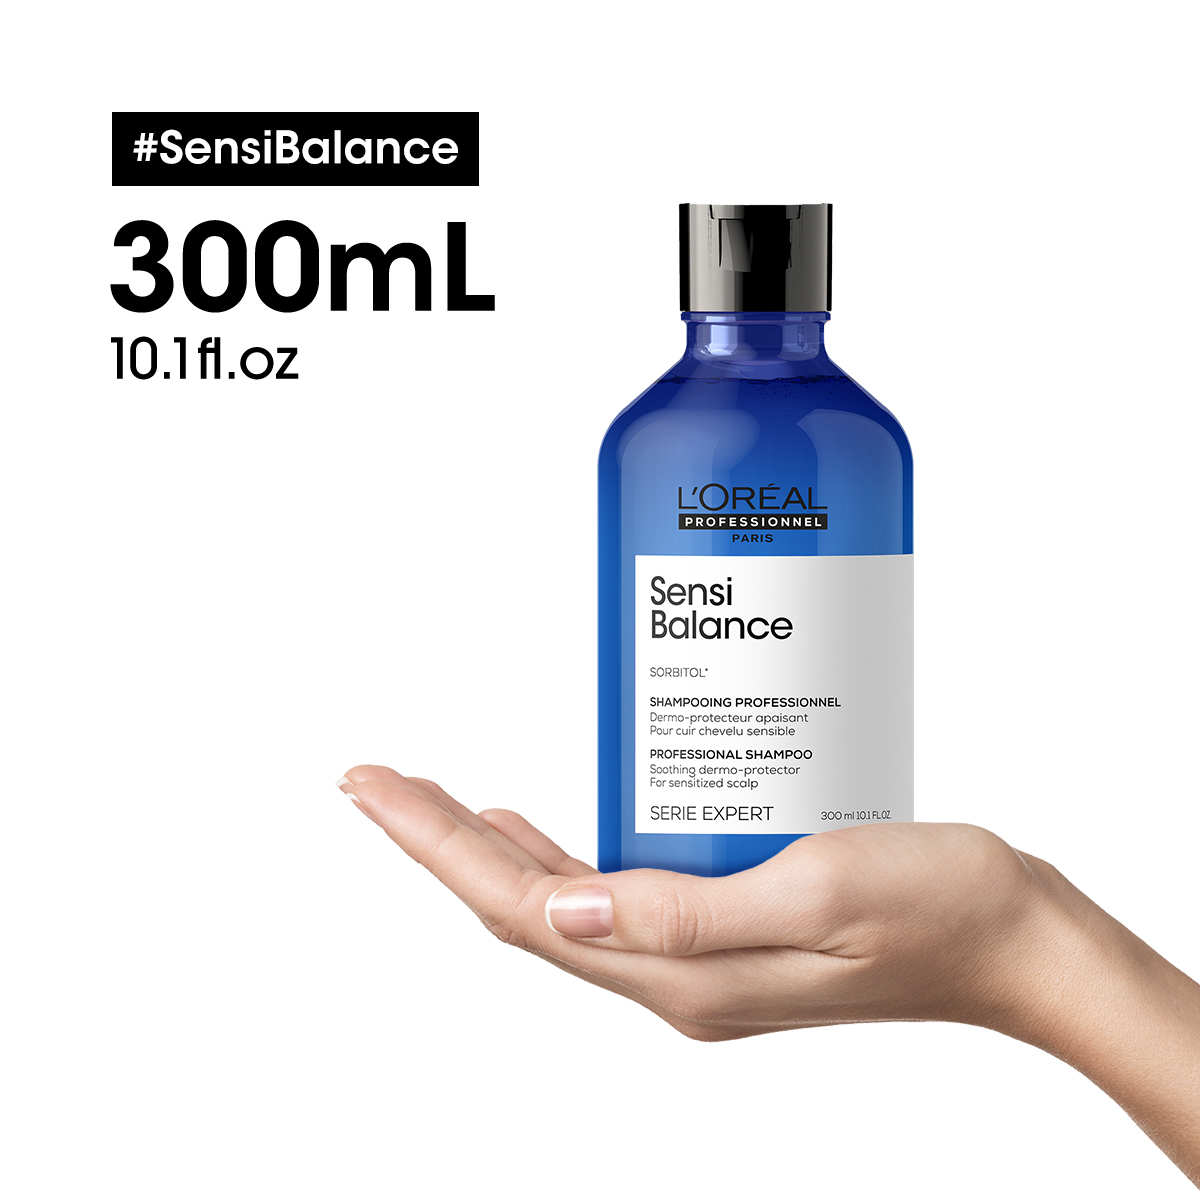 Dầu gội L'oreal Serie Expert Sorbitol Sensibalance soothing dermo-protector shampoo cho tóc và da đầu nhạy cảm